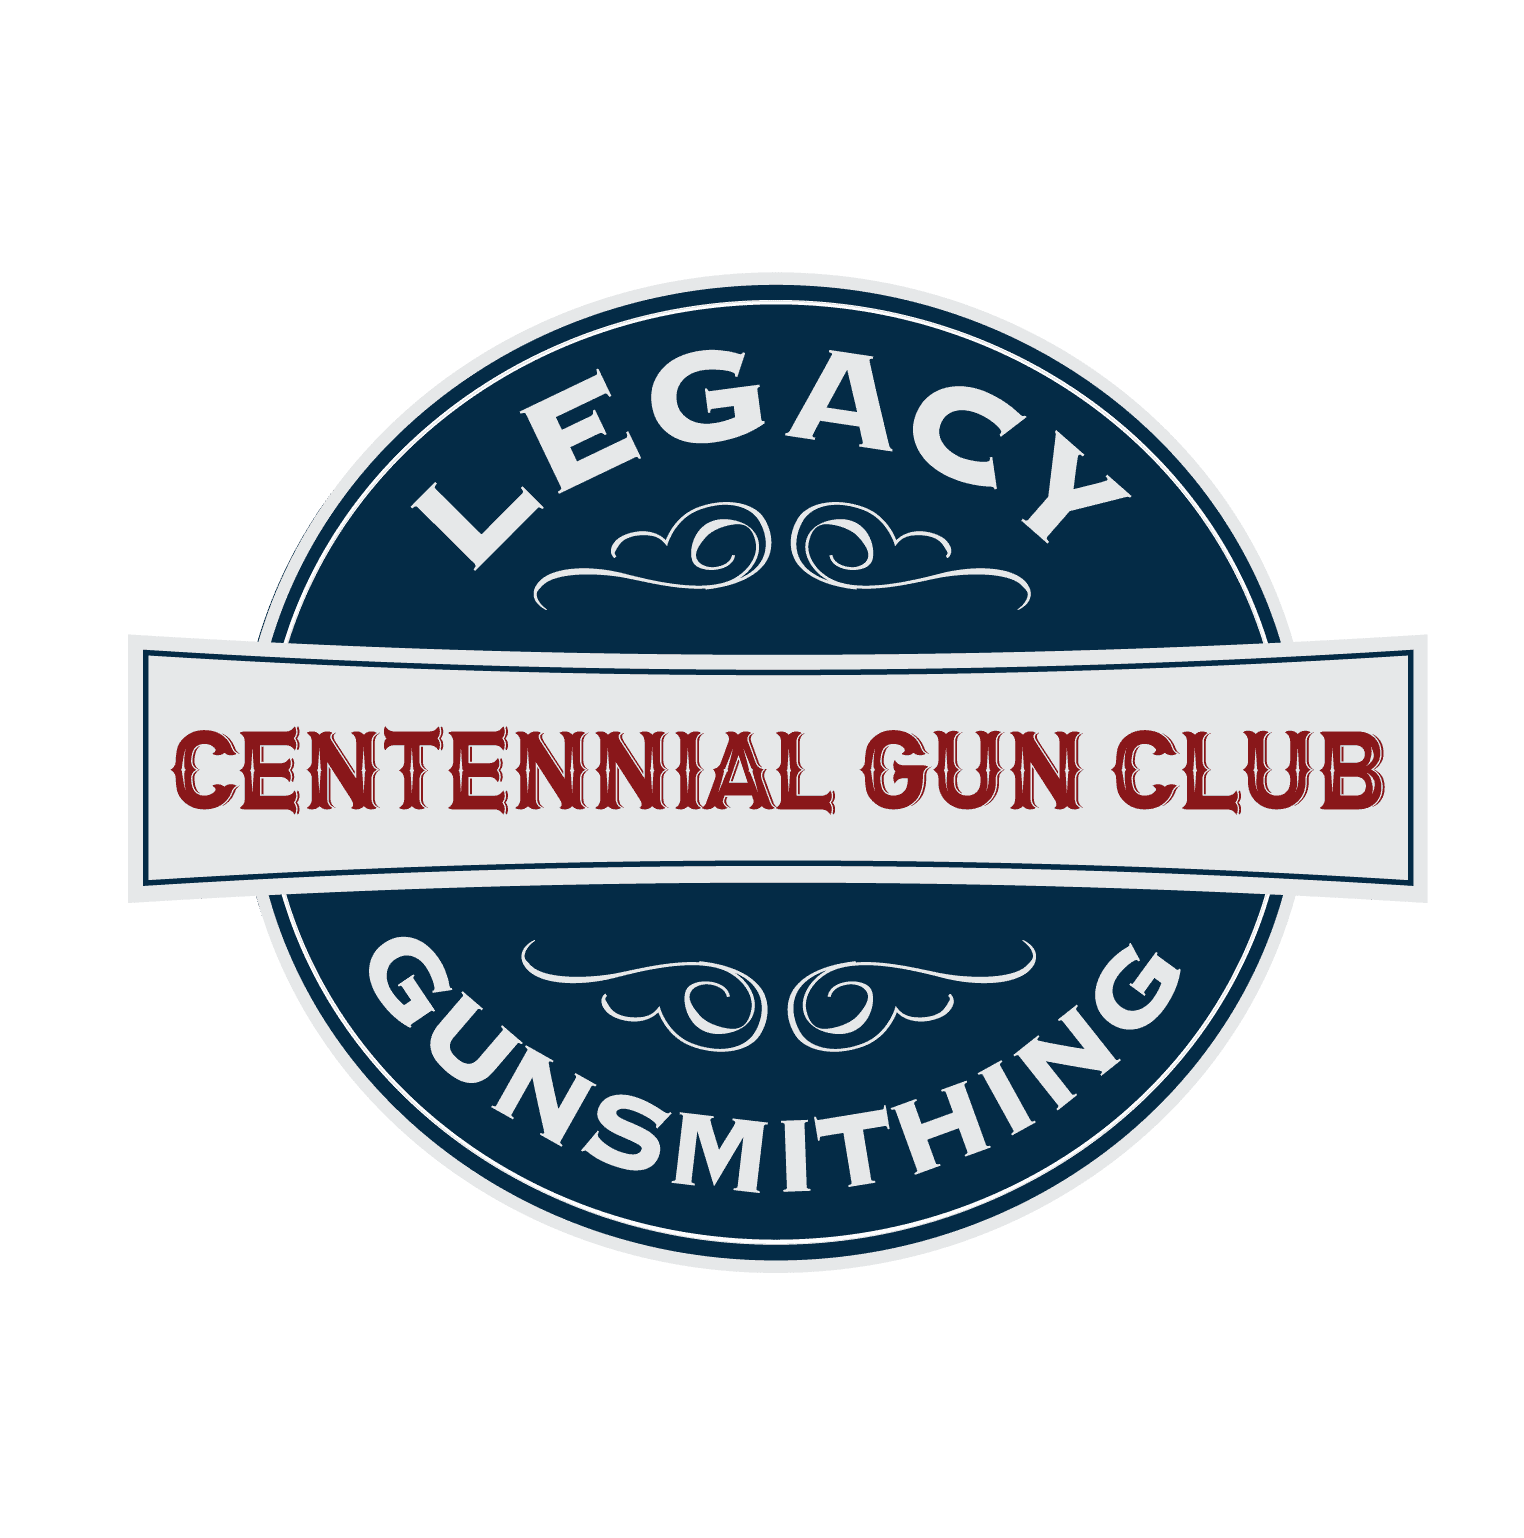 centennial gun club - legacy gunsmithing